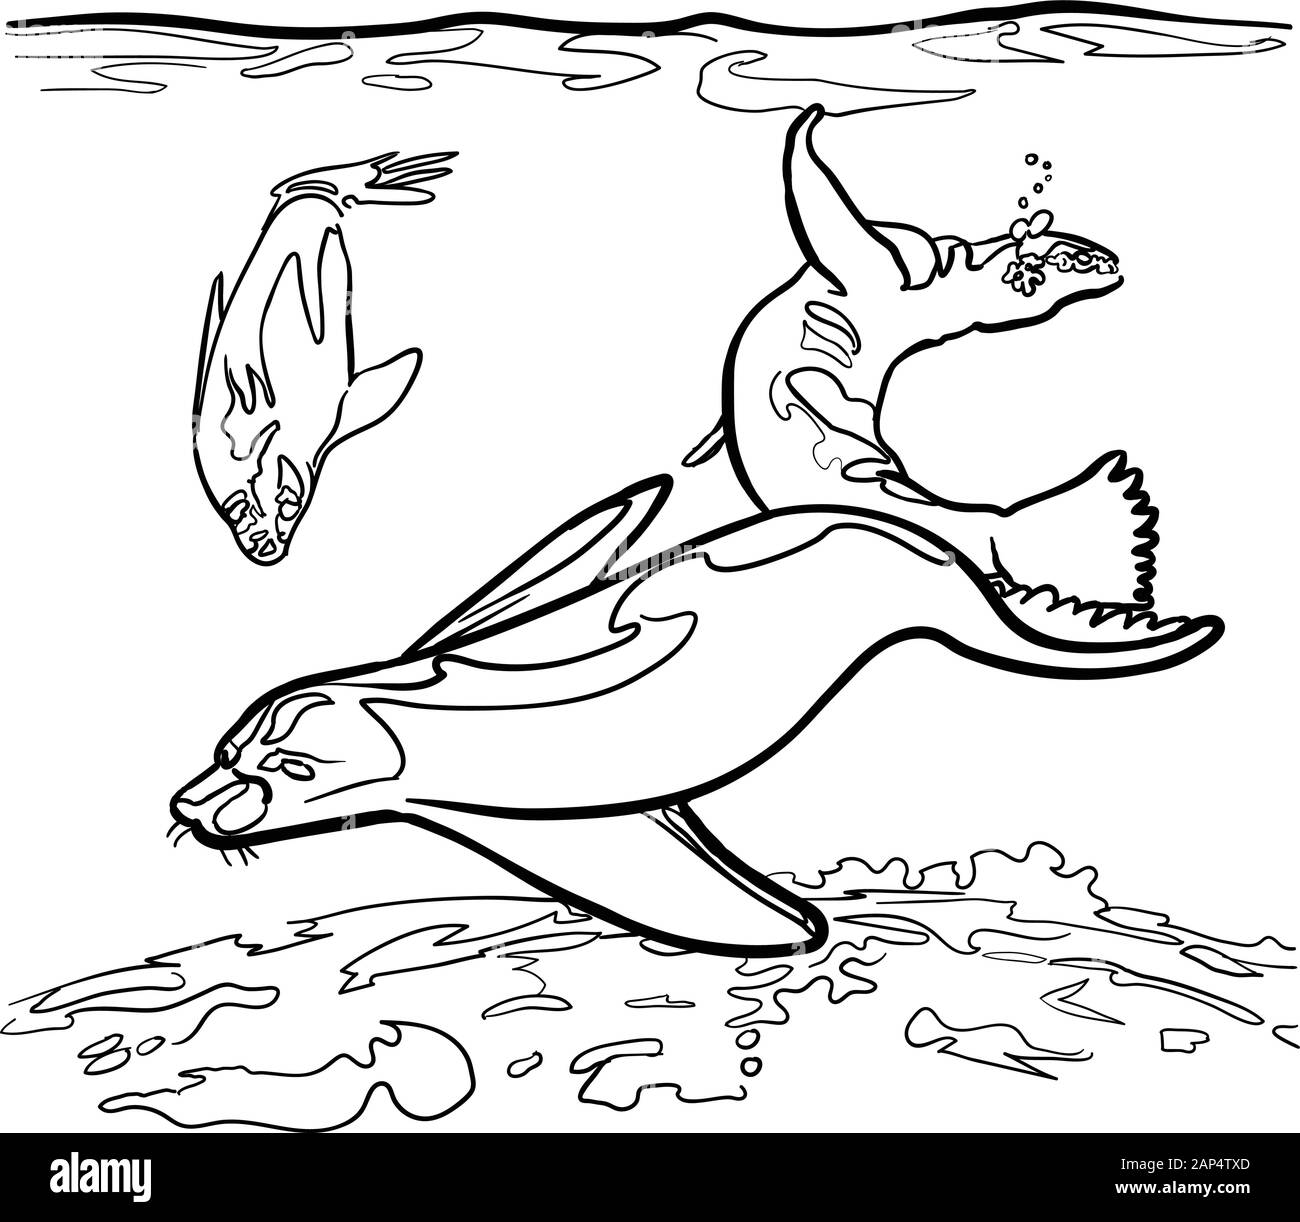 Gruppe von Wasser Robben schwimmen, spielen twerling & tun Akrobatik unter  Wasser Stock-Vektorgrafik - Alamy